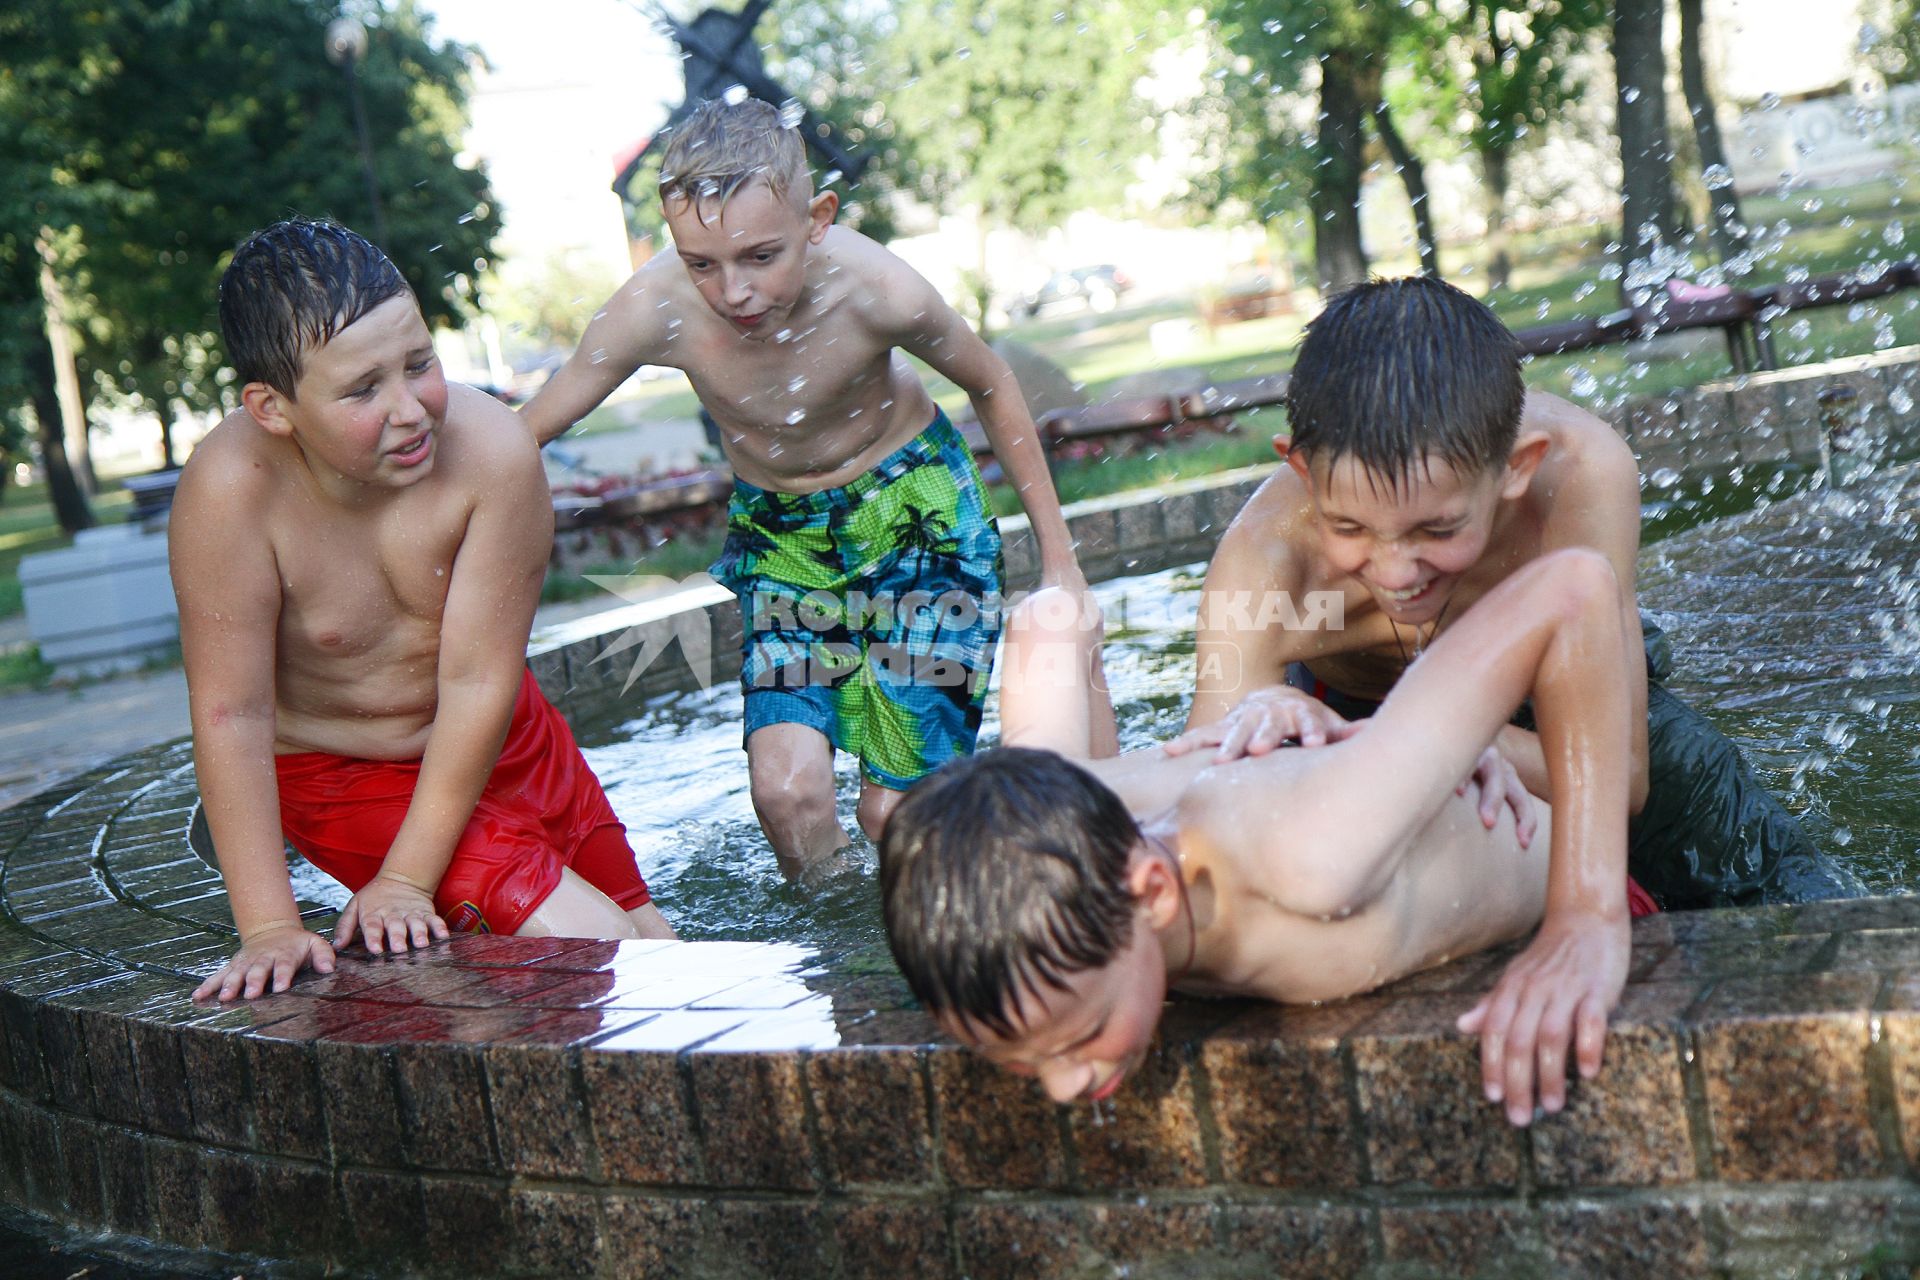 Дети играют в городском фонтане